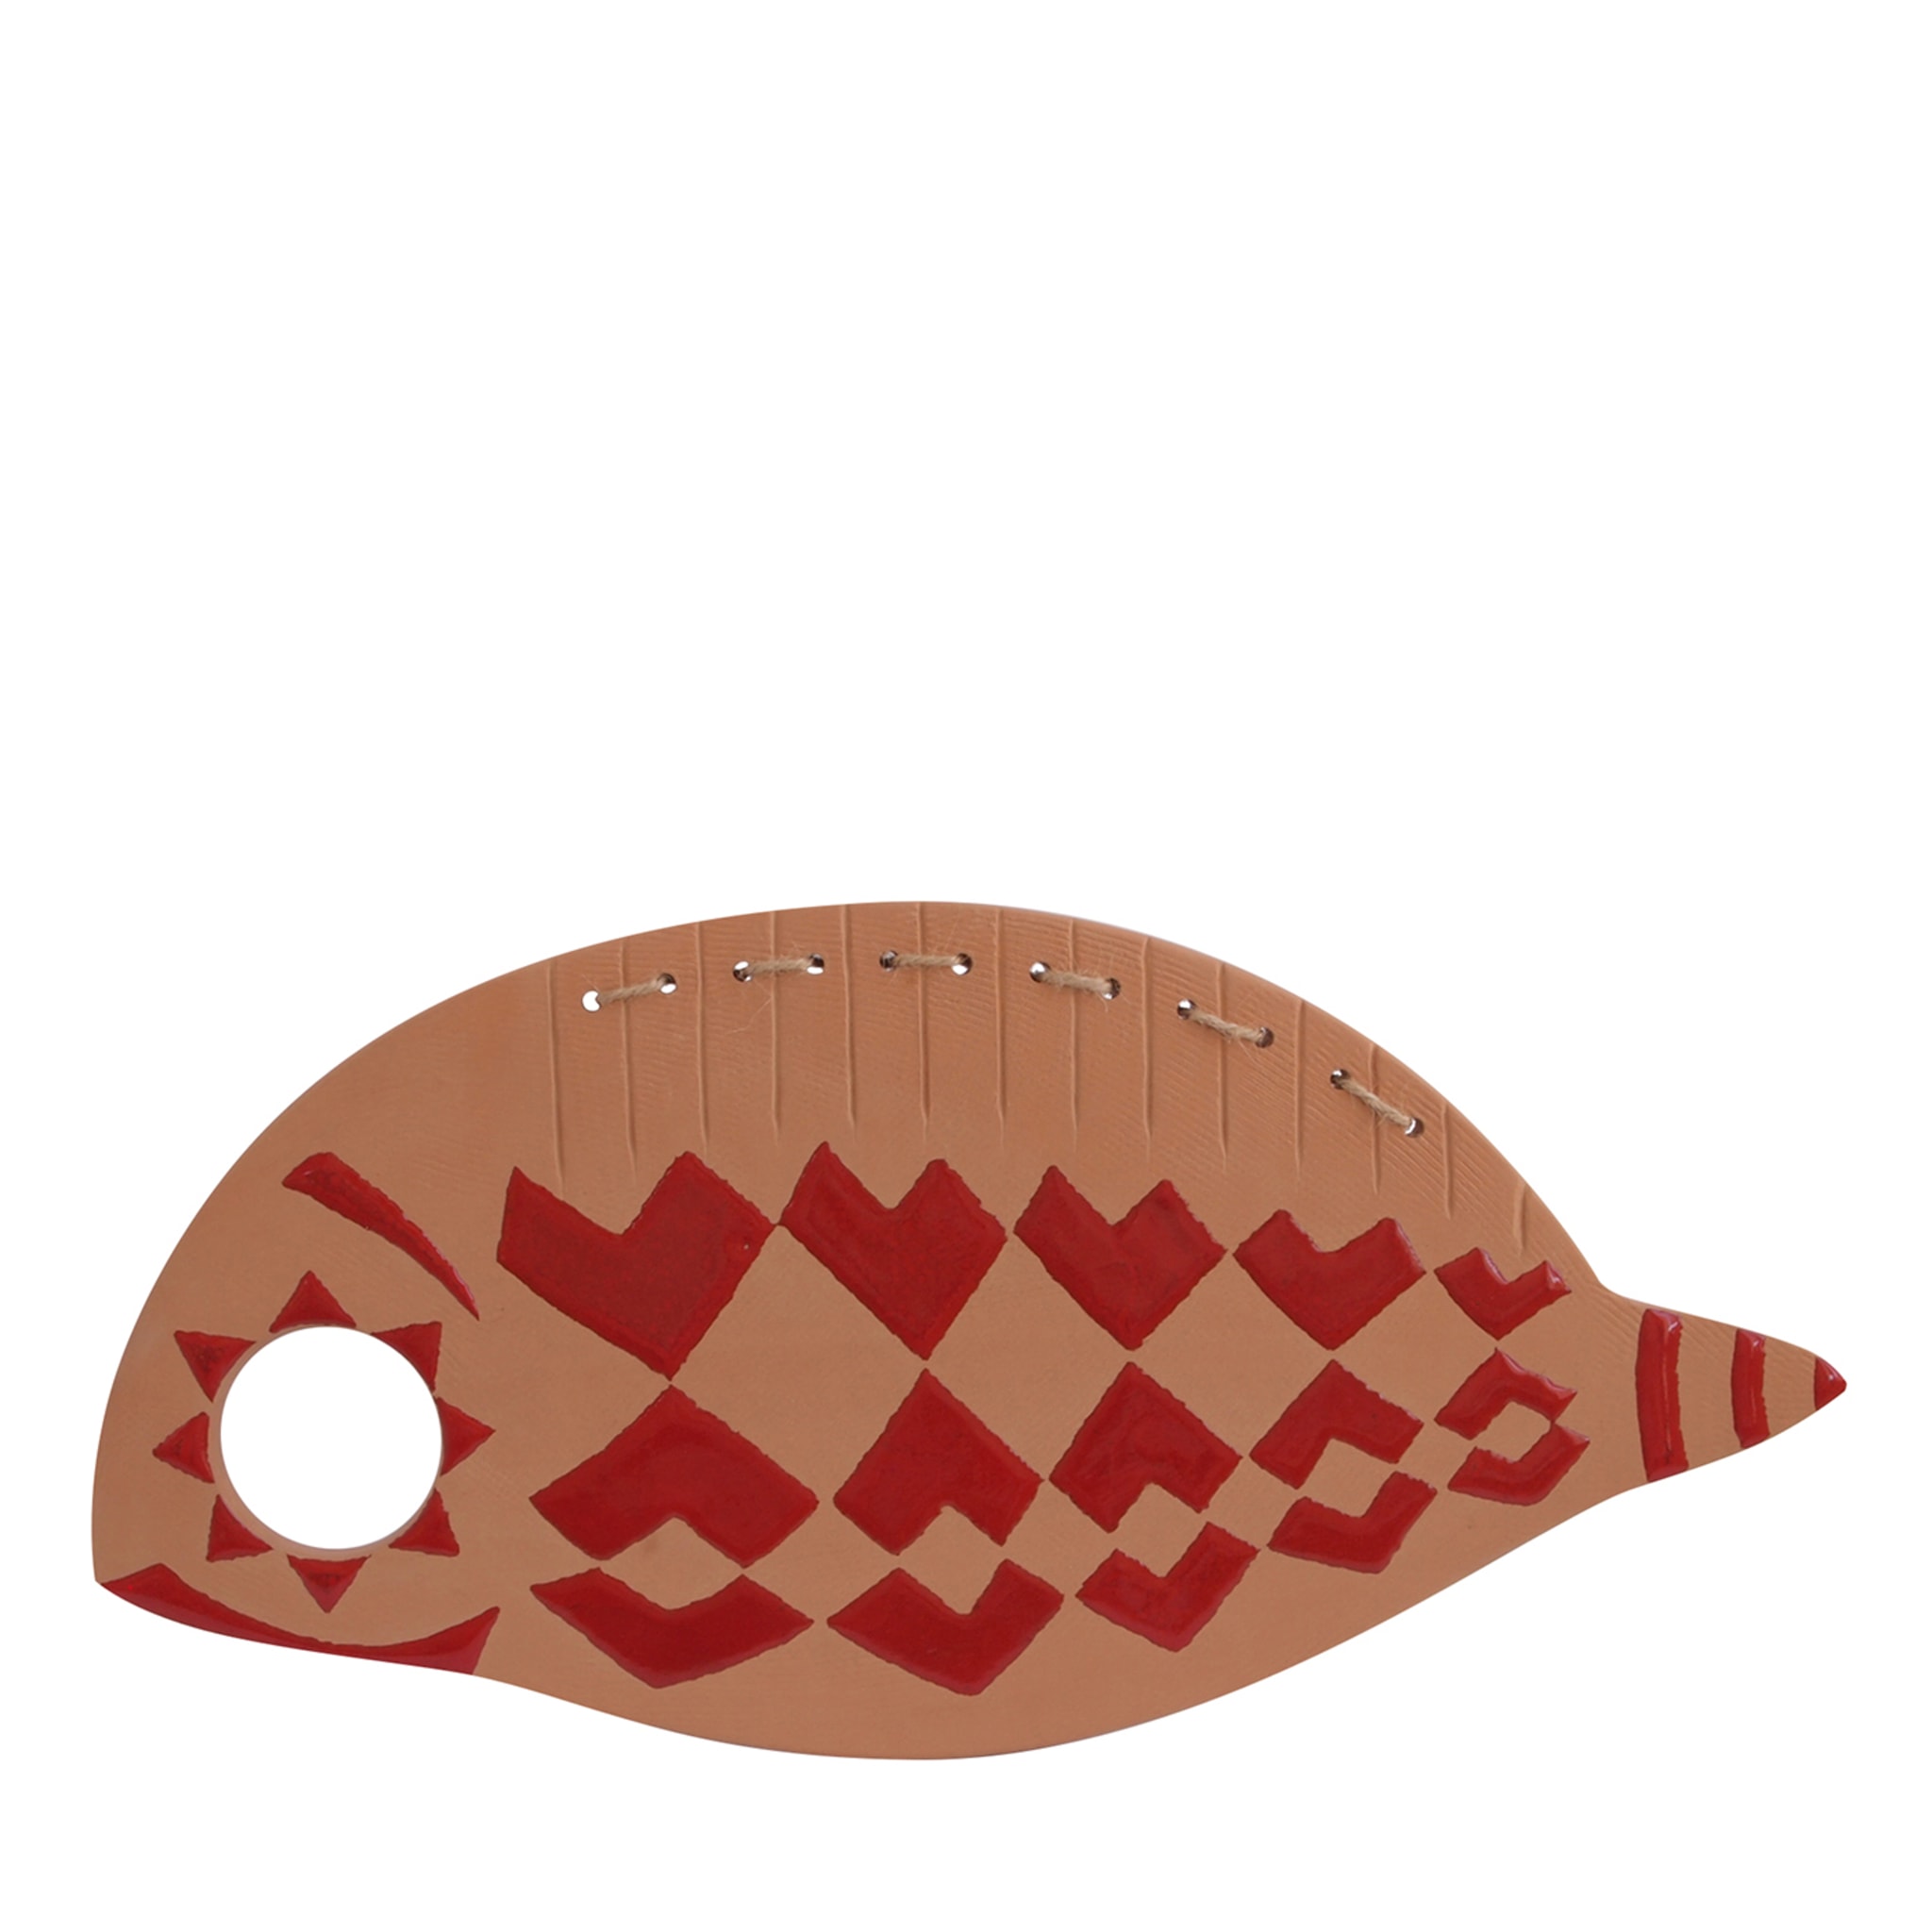 Terracotta rossa simile a un pesce  - Vista principale